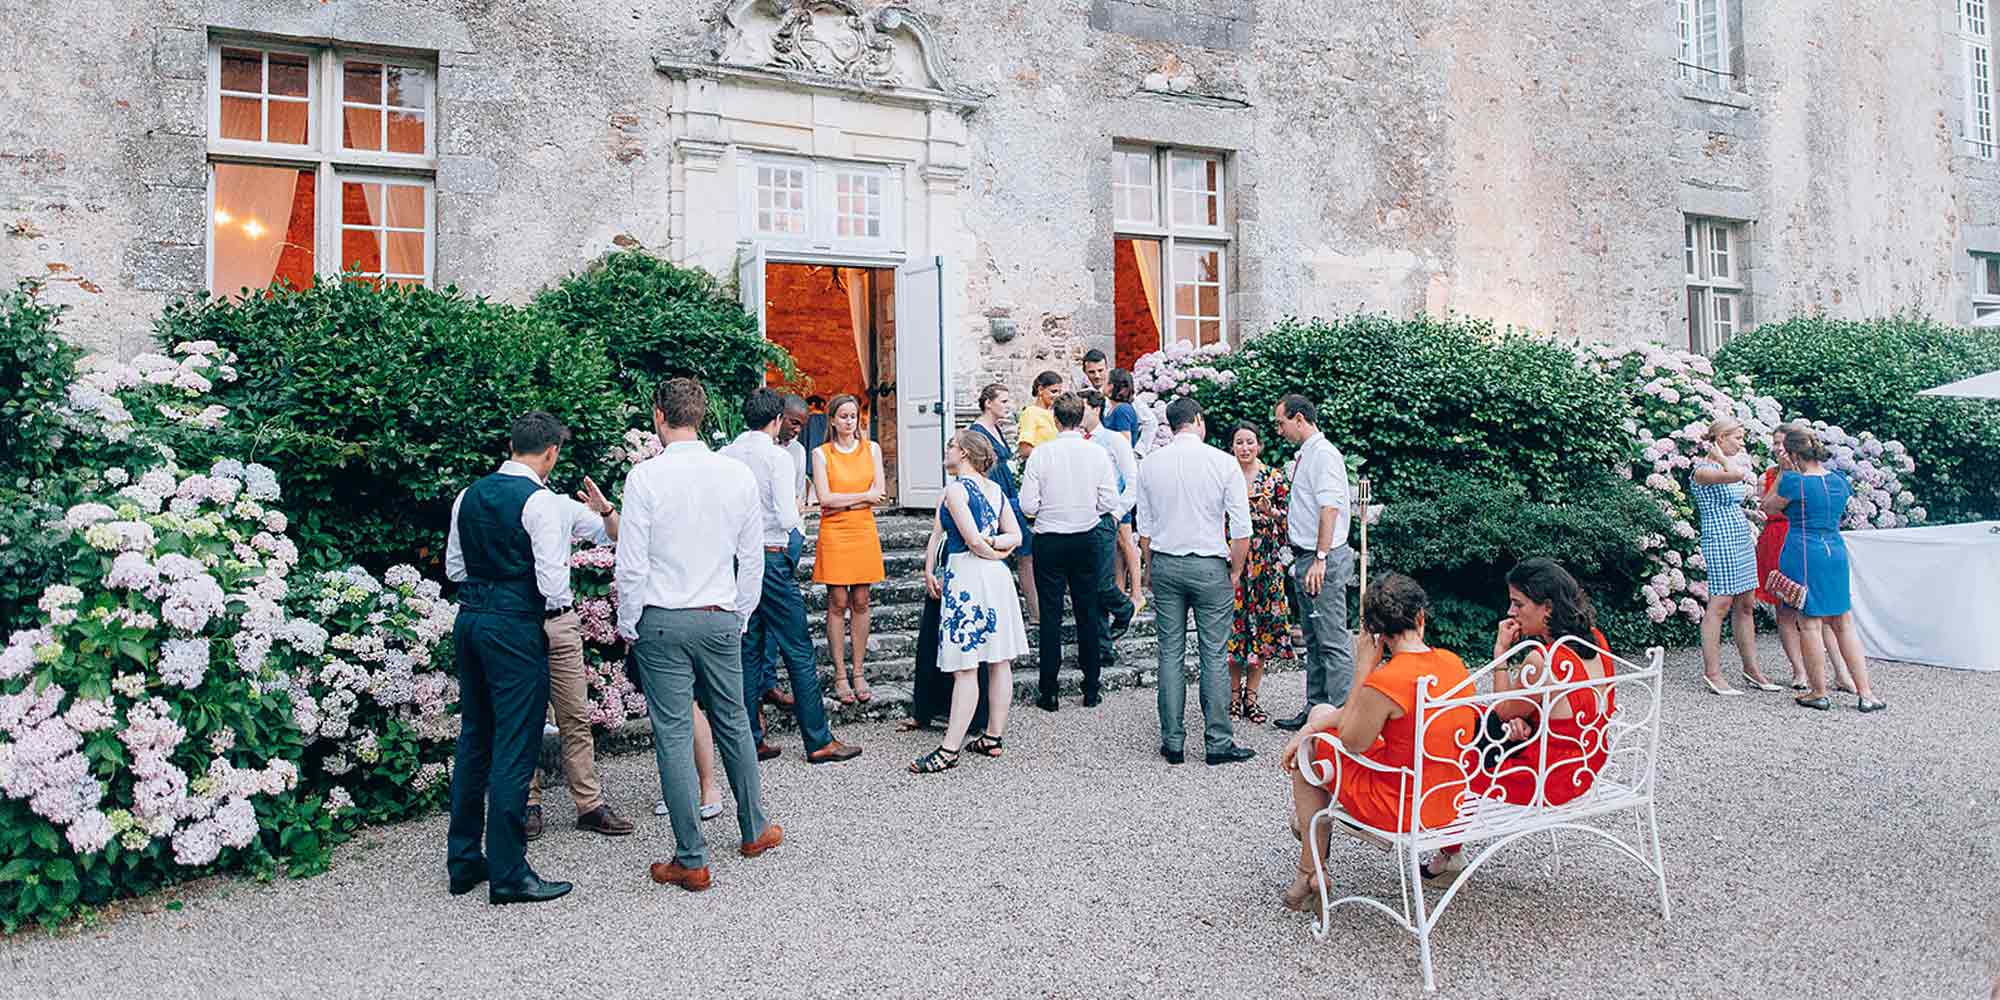 Chateau Pordor wedding